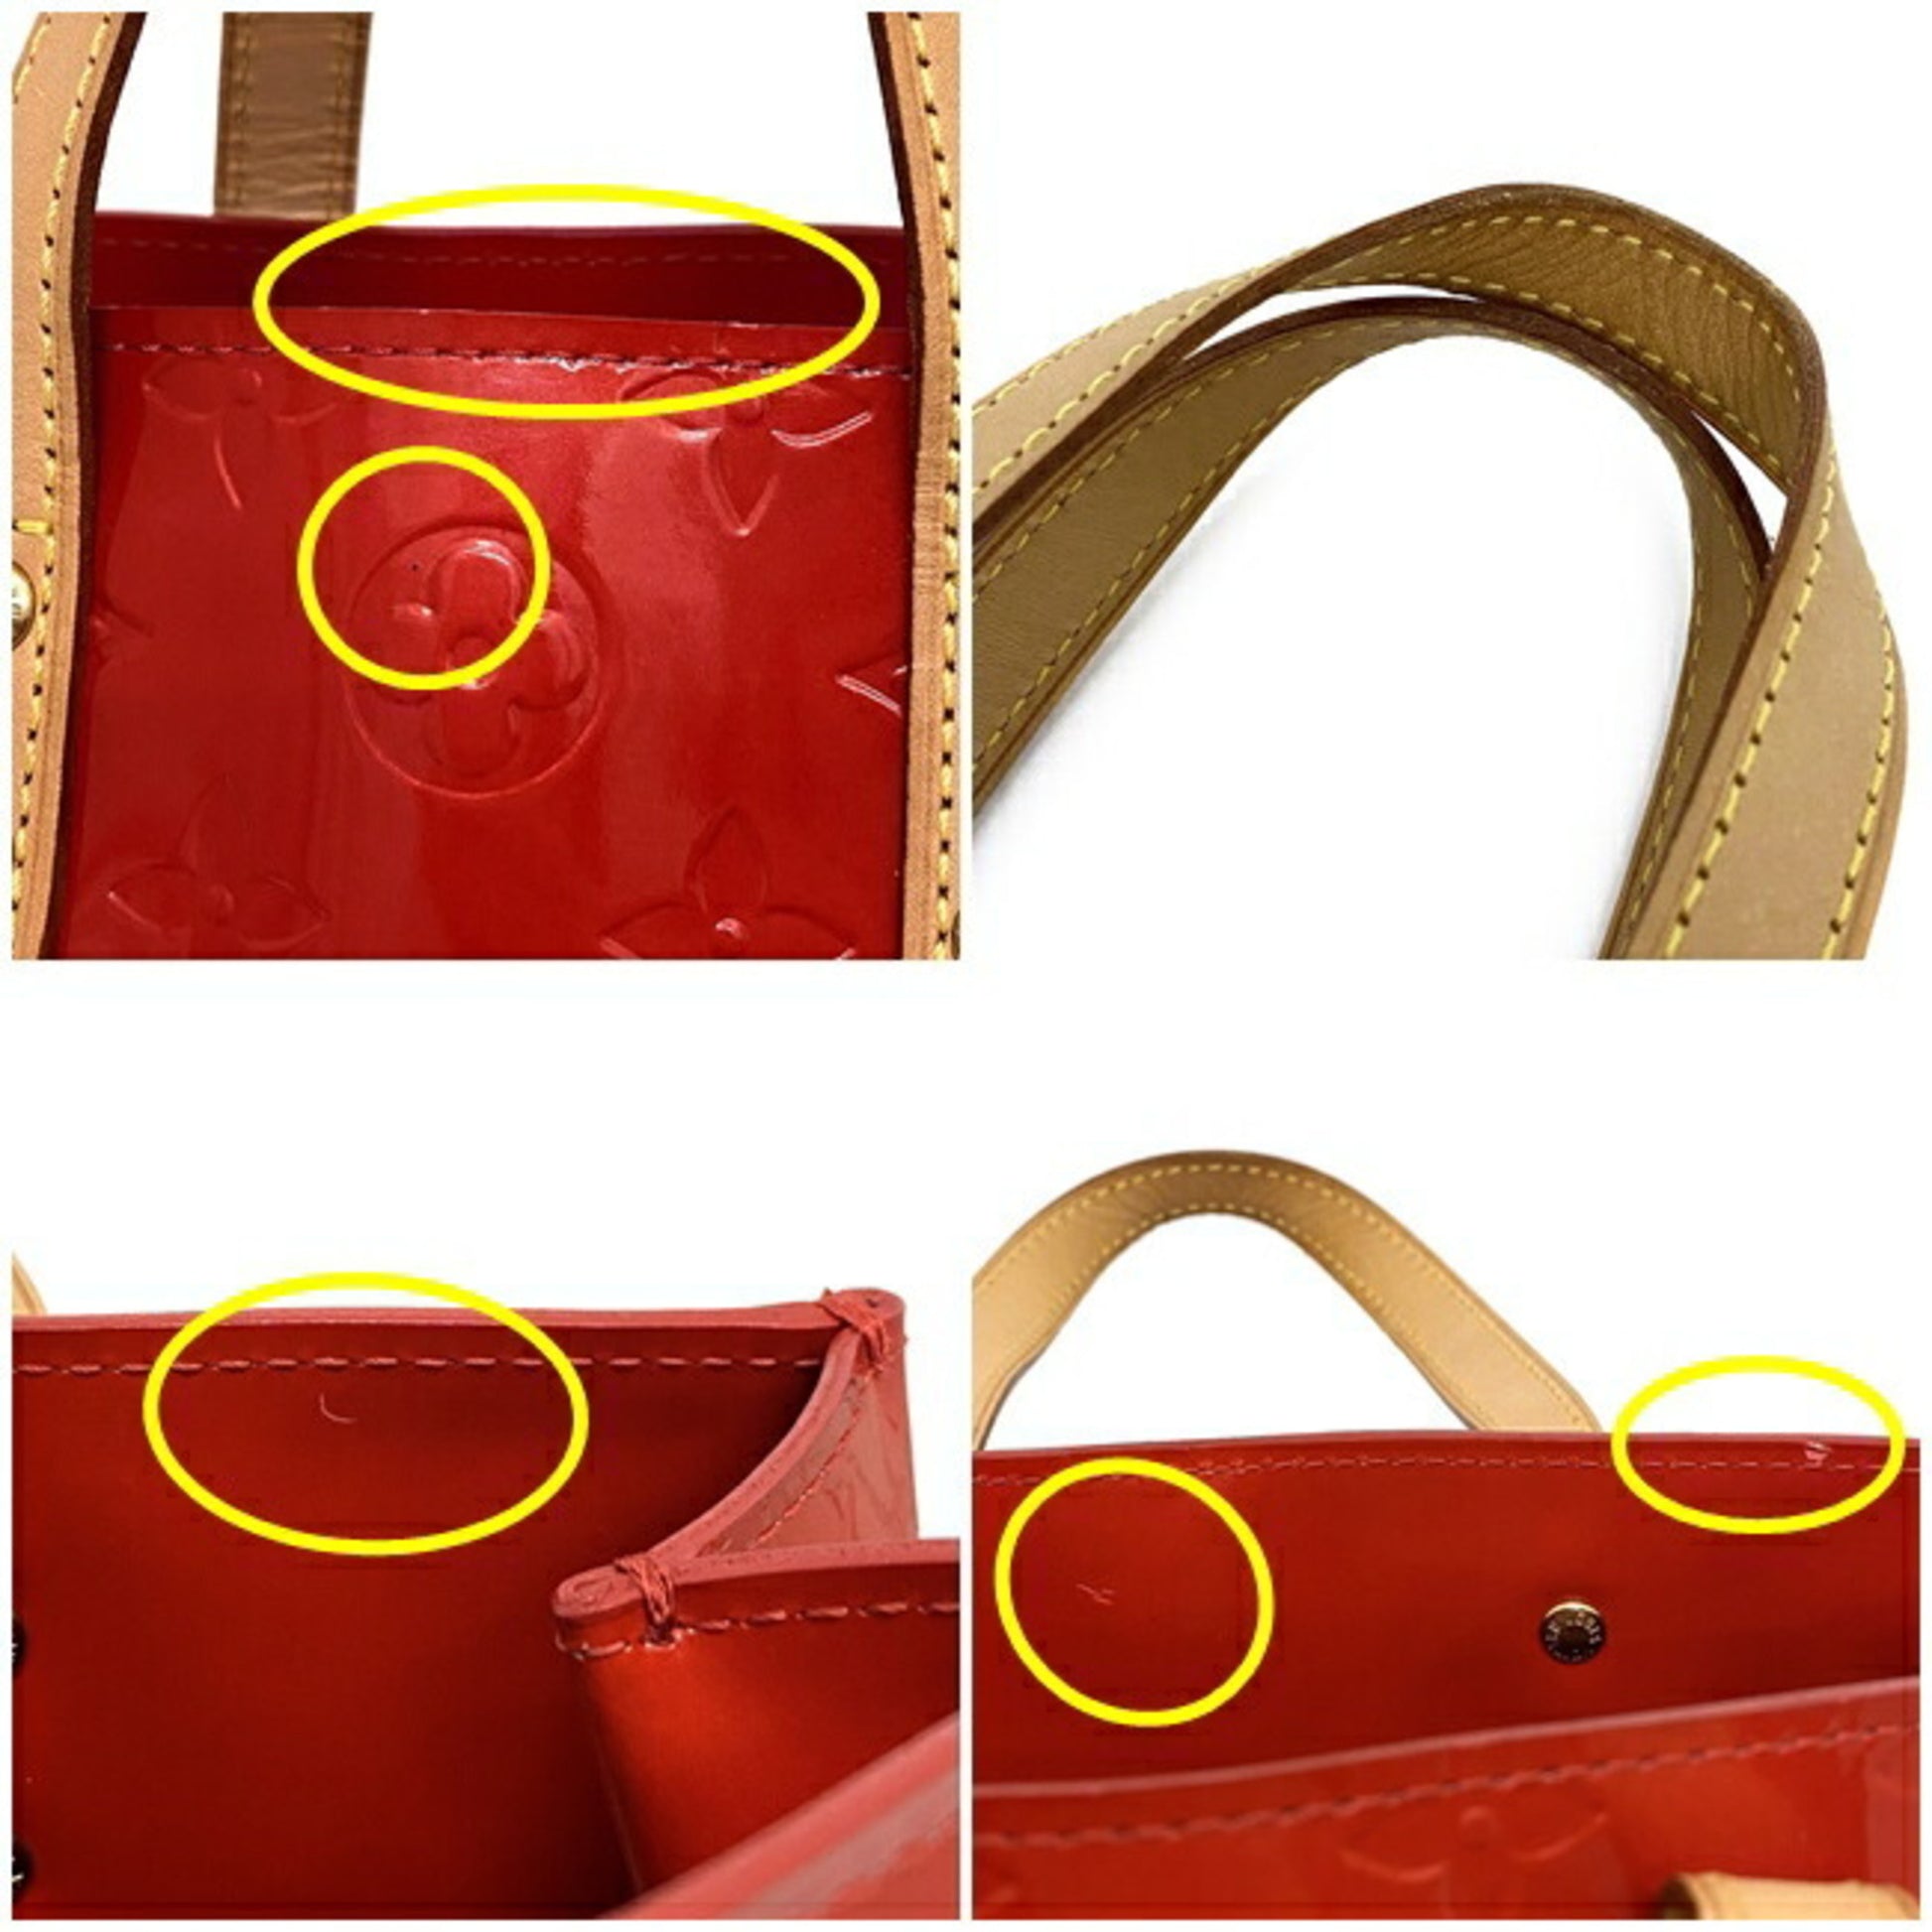 Louis-Vuitton-Monogram-Vernis-Lead-PM-Hand-Bag-Pink-M91221 – dct